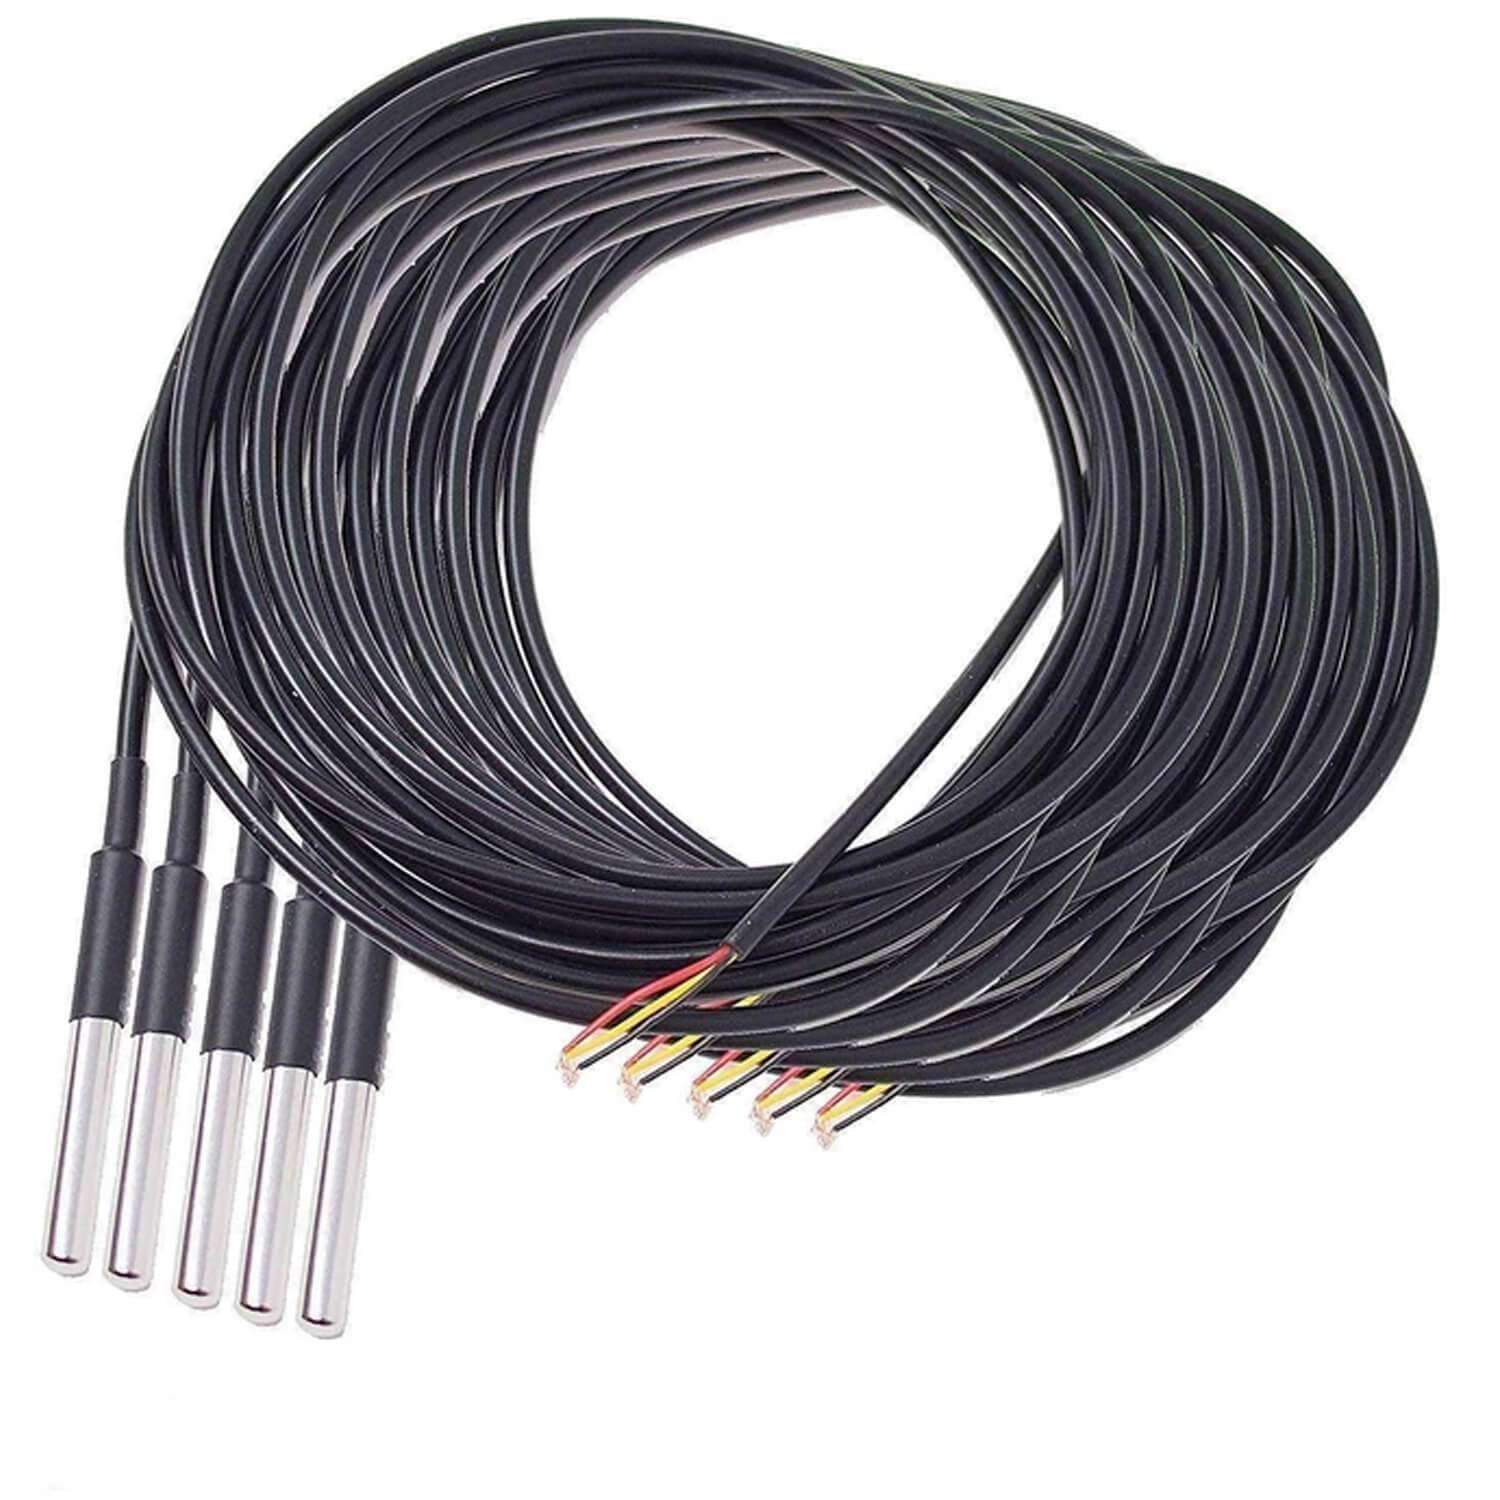 3M Kabel DS18B20 digitaler Edelstahl Temperatursensor Temperaturfühler, wasserdicht kompatibel mit Arduino und Raspberry Pi